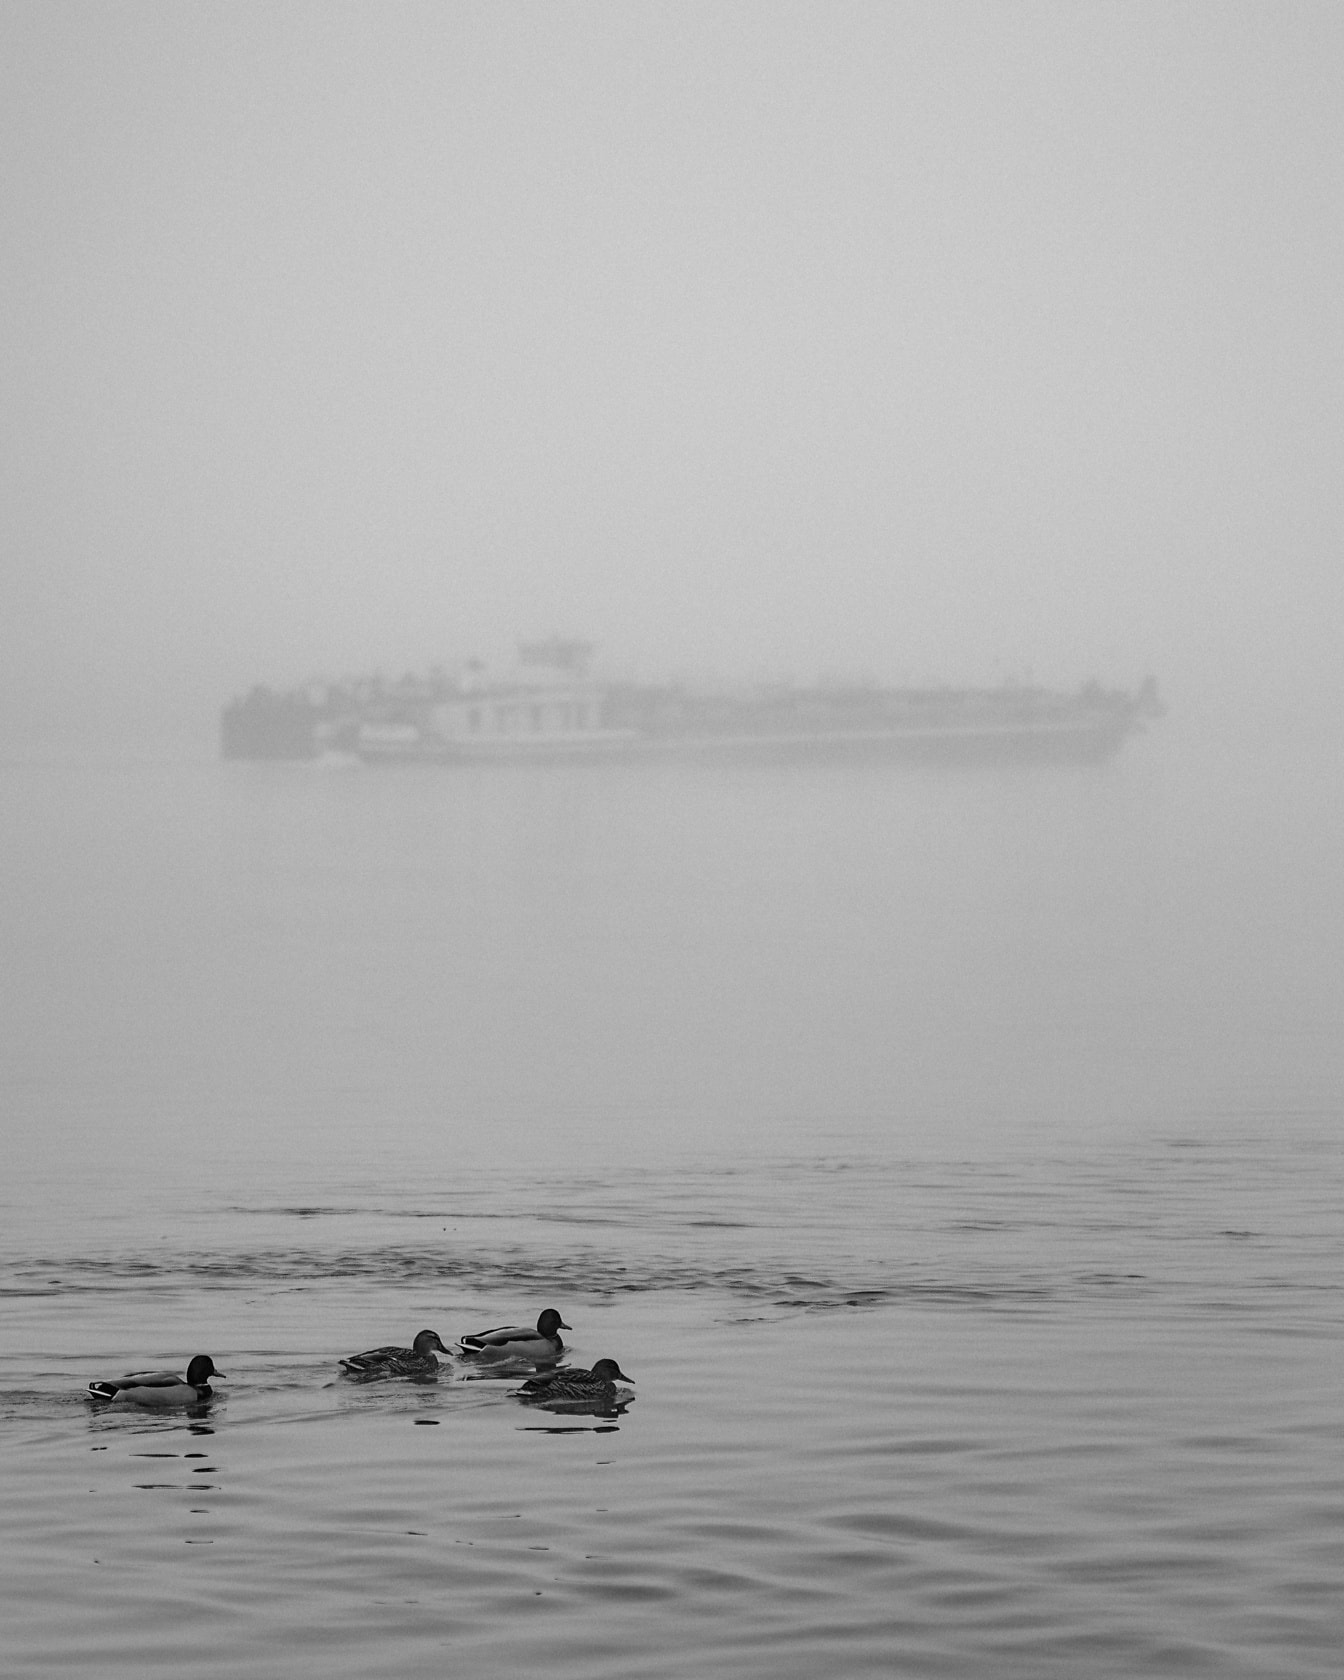 Rațe înotând în apă cu nava în ceață densă în fundal